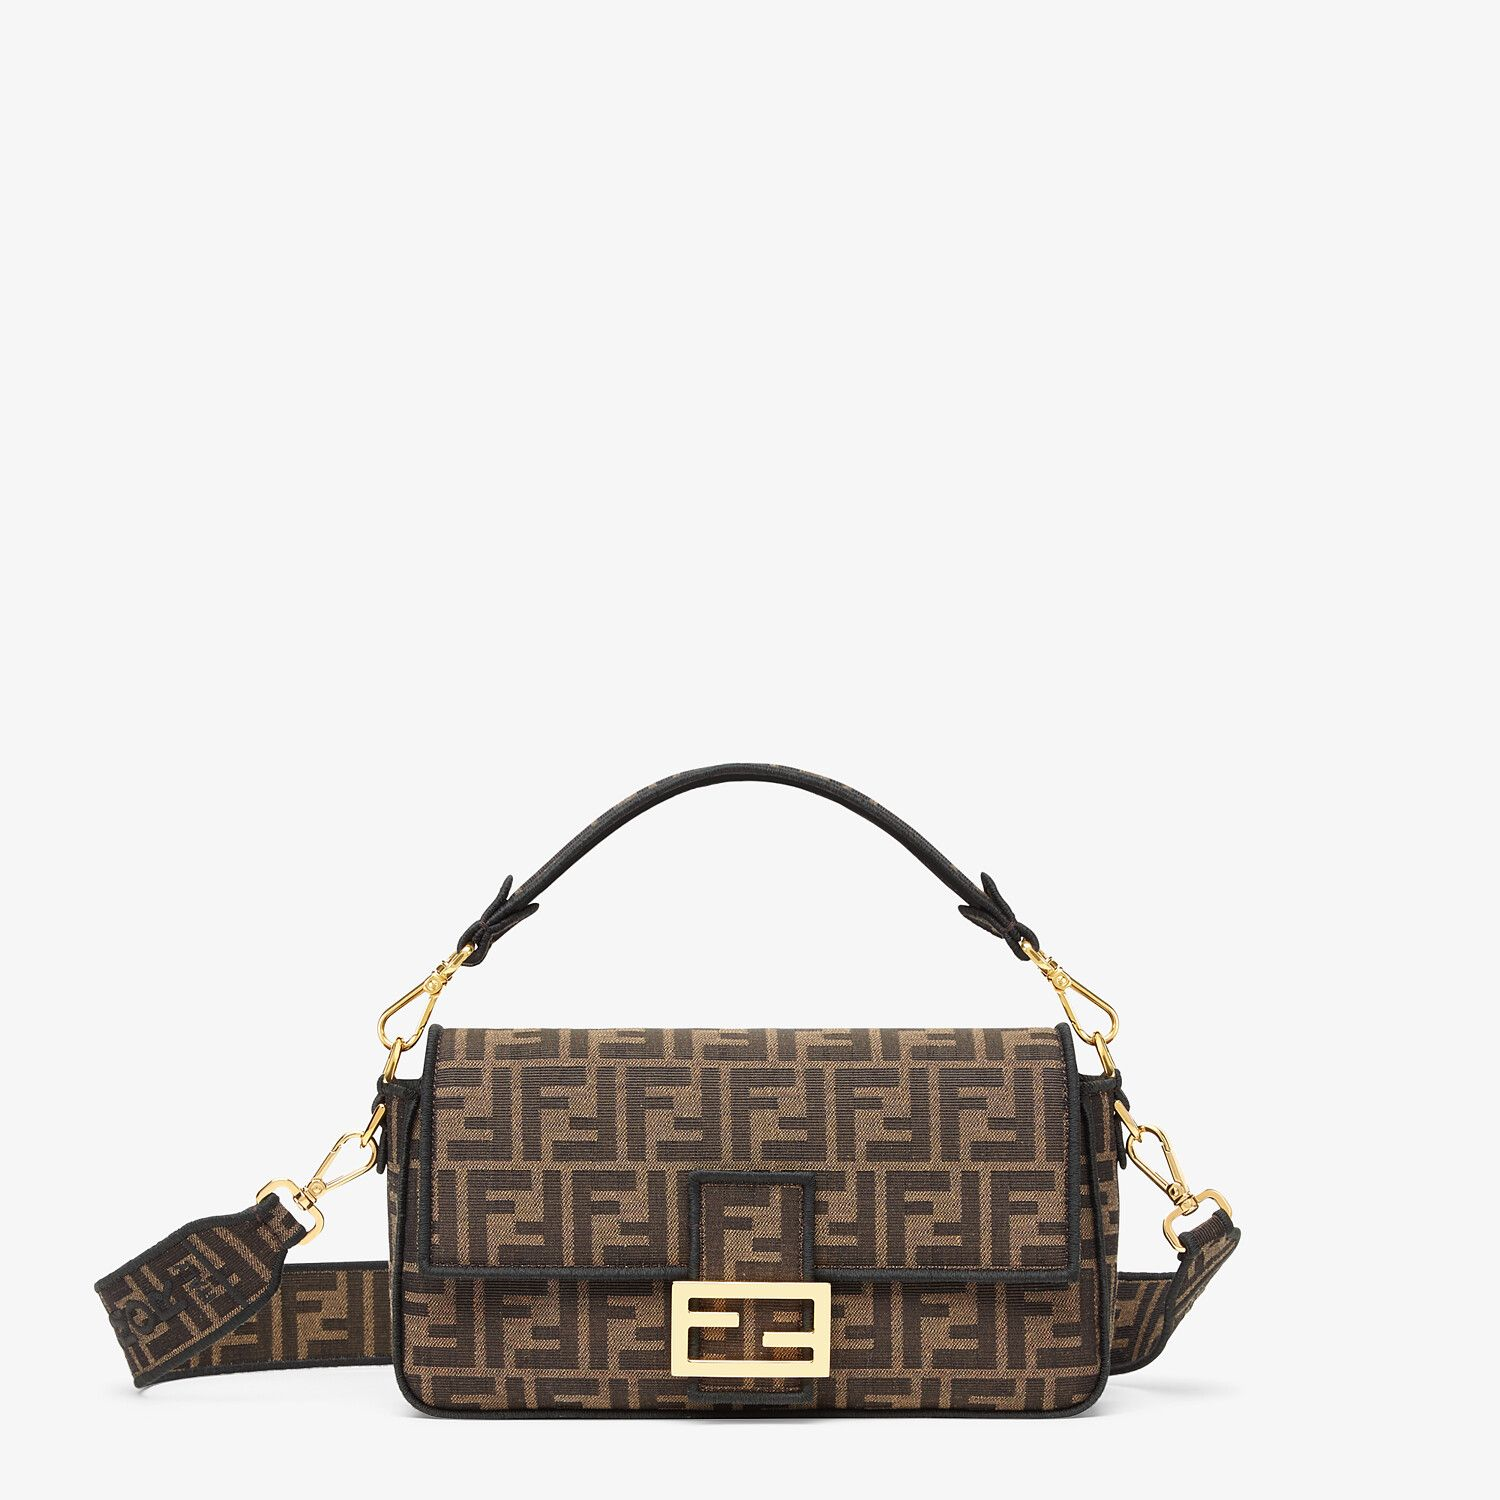 MO - Top Quality Bags LUV 451 in 2023  Cheap louis vuitton handbags, Bags,  Bags designer fashion